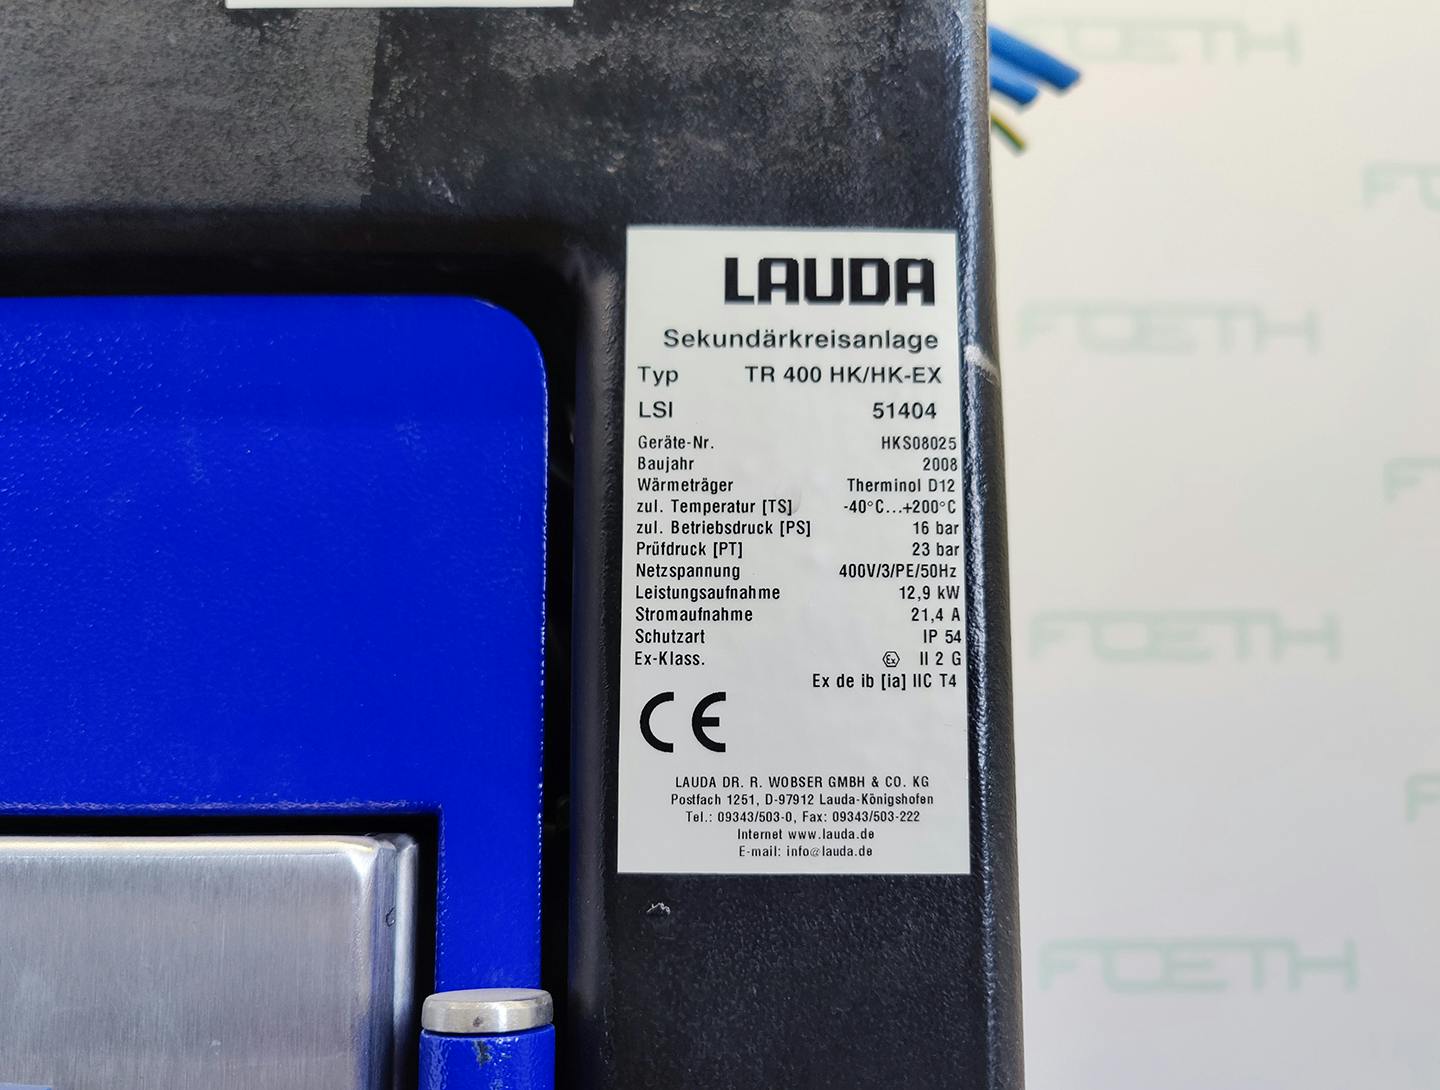 Lauda TR400 HK/HK-EX "secondary circuit system" - Atemperador - image 13